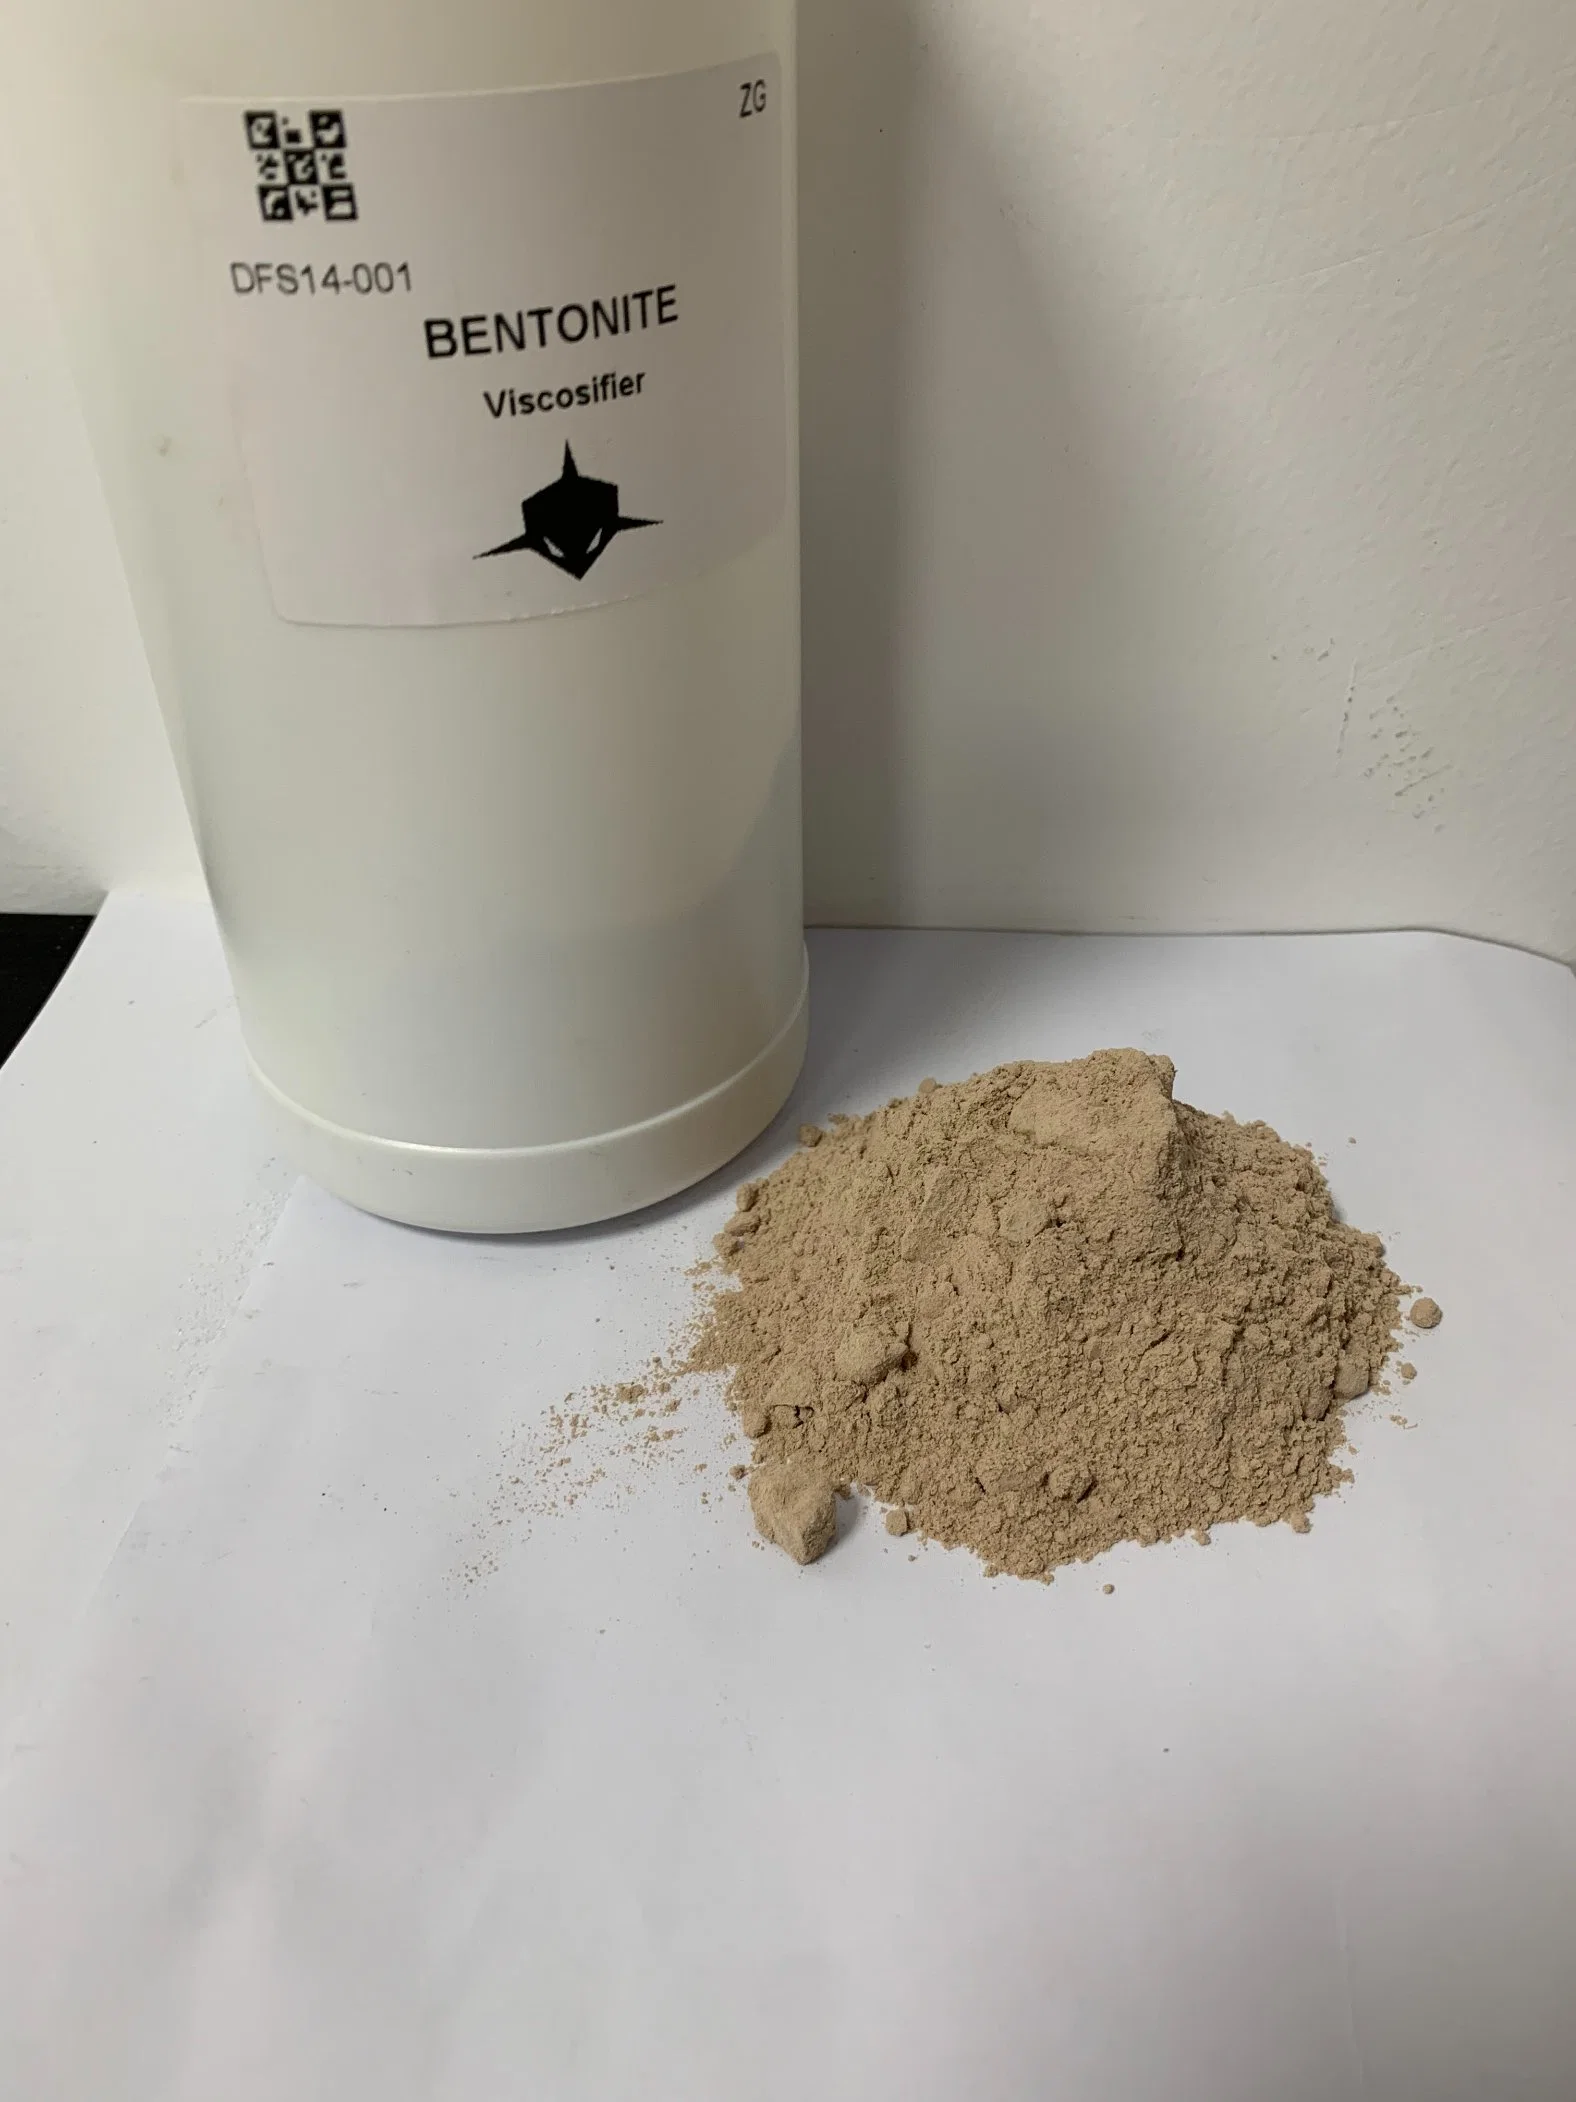 Shark Oilfield API Grade Bentonite Viscosifier